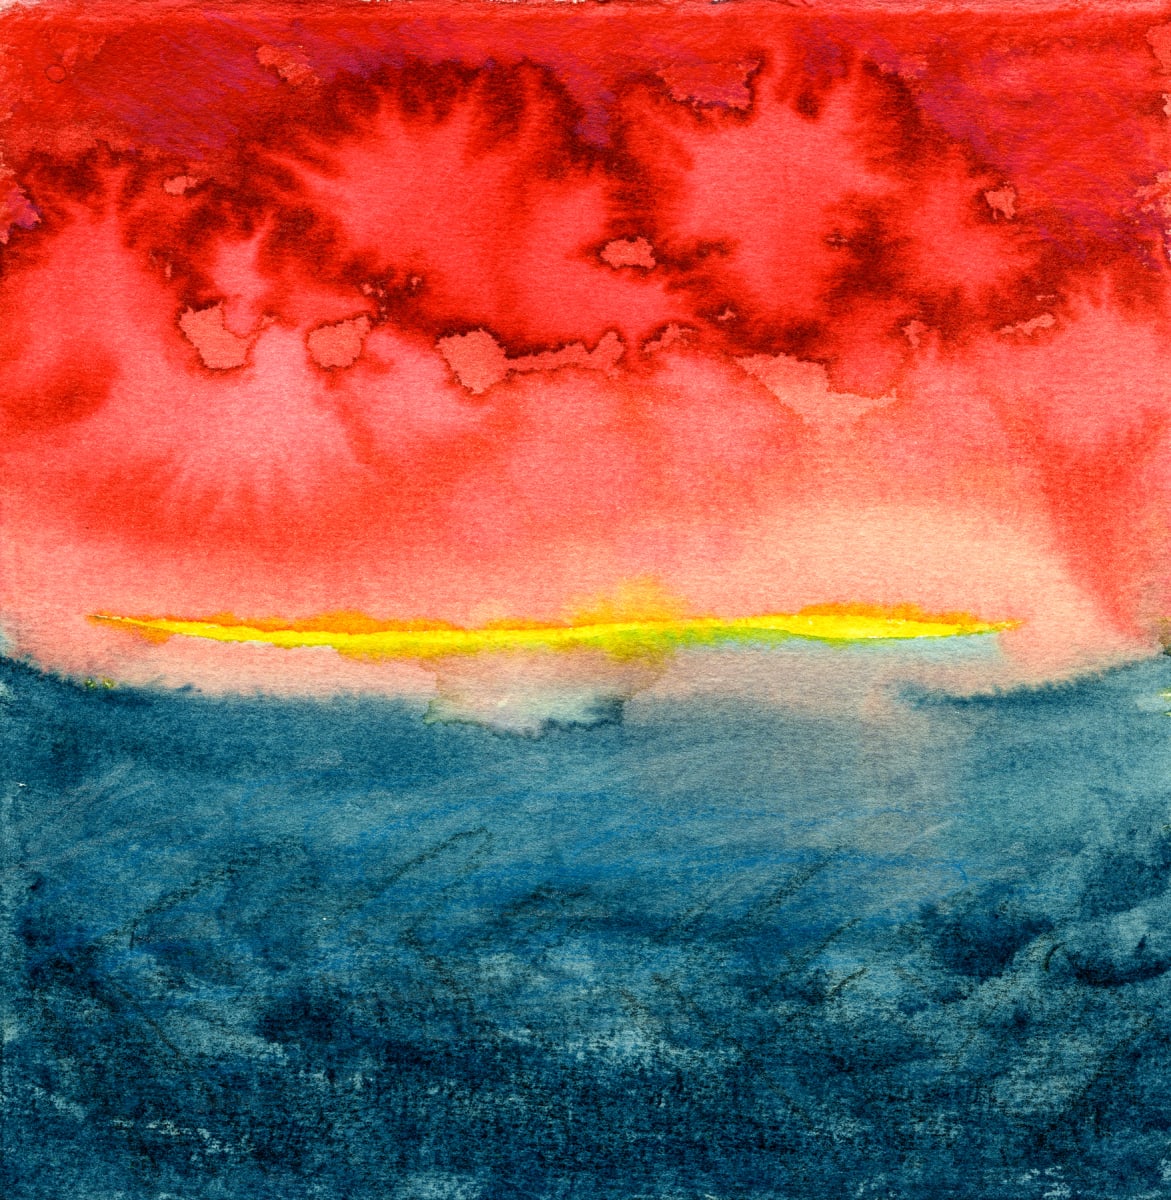 Watercolor: Bloodied Skies by Bernard C. Meyers 